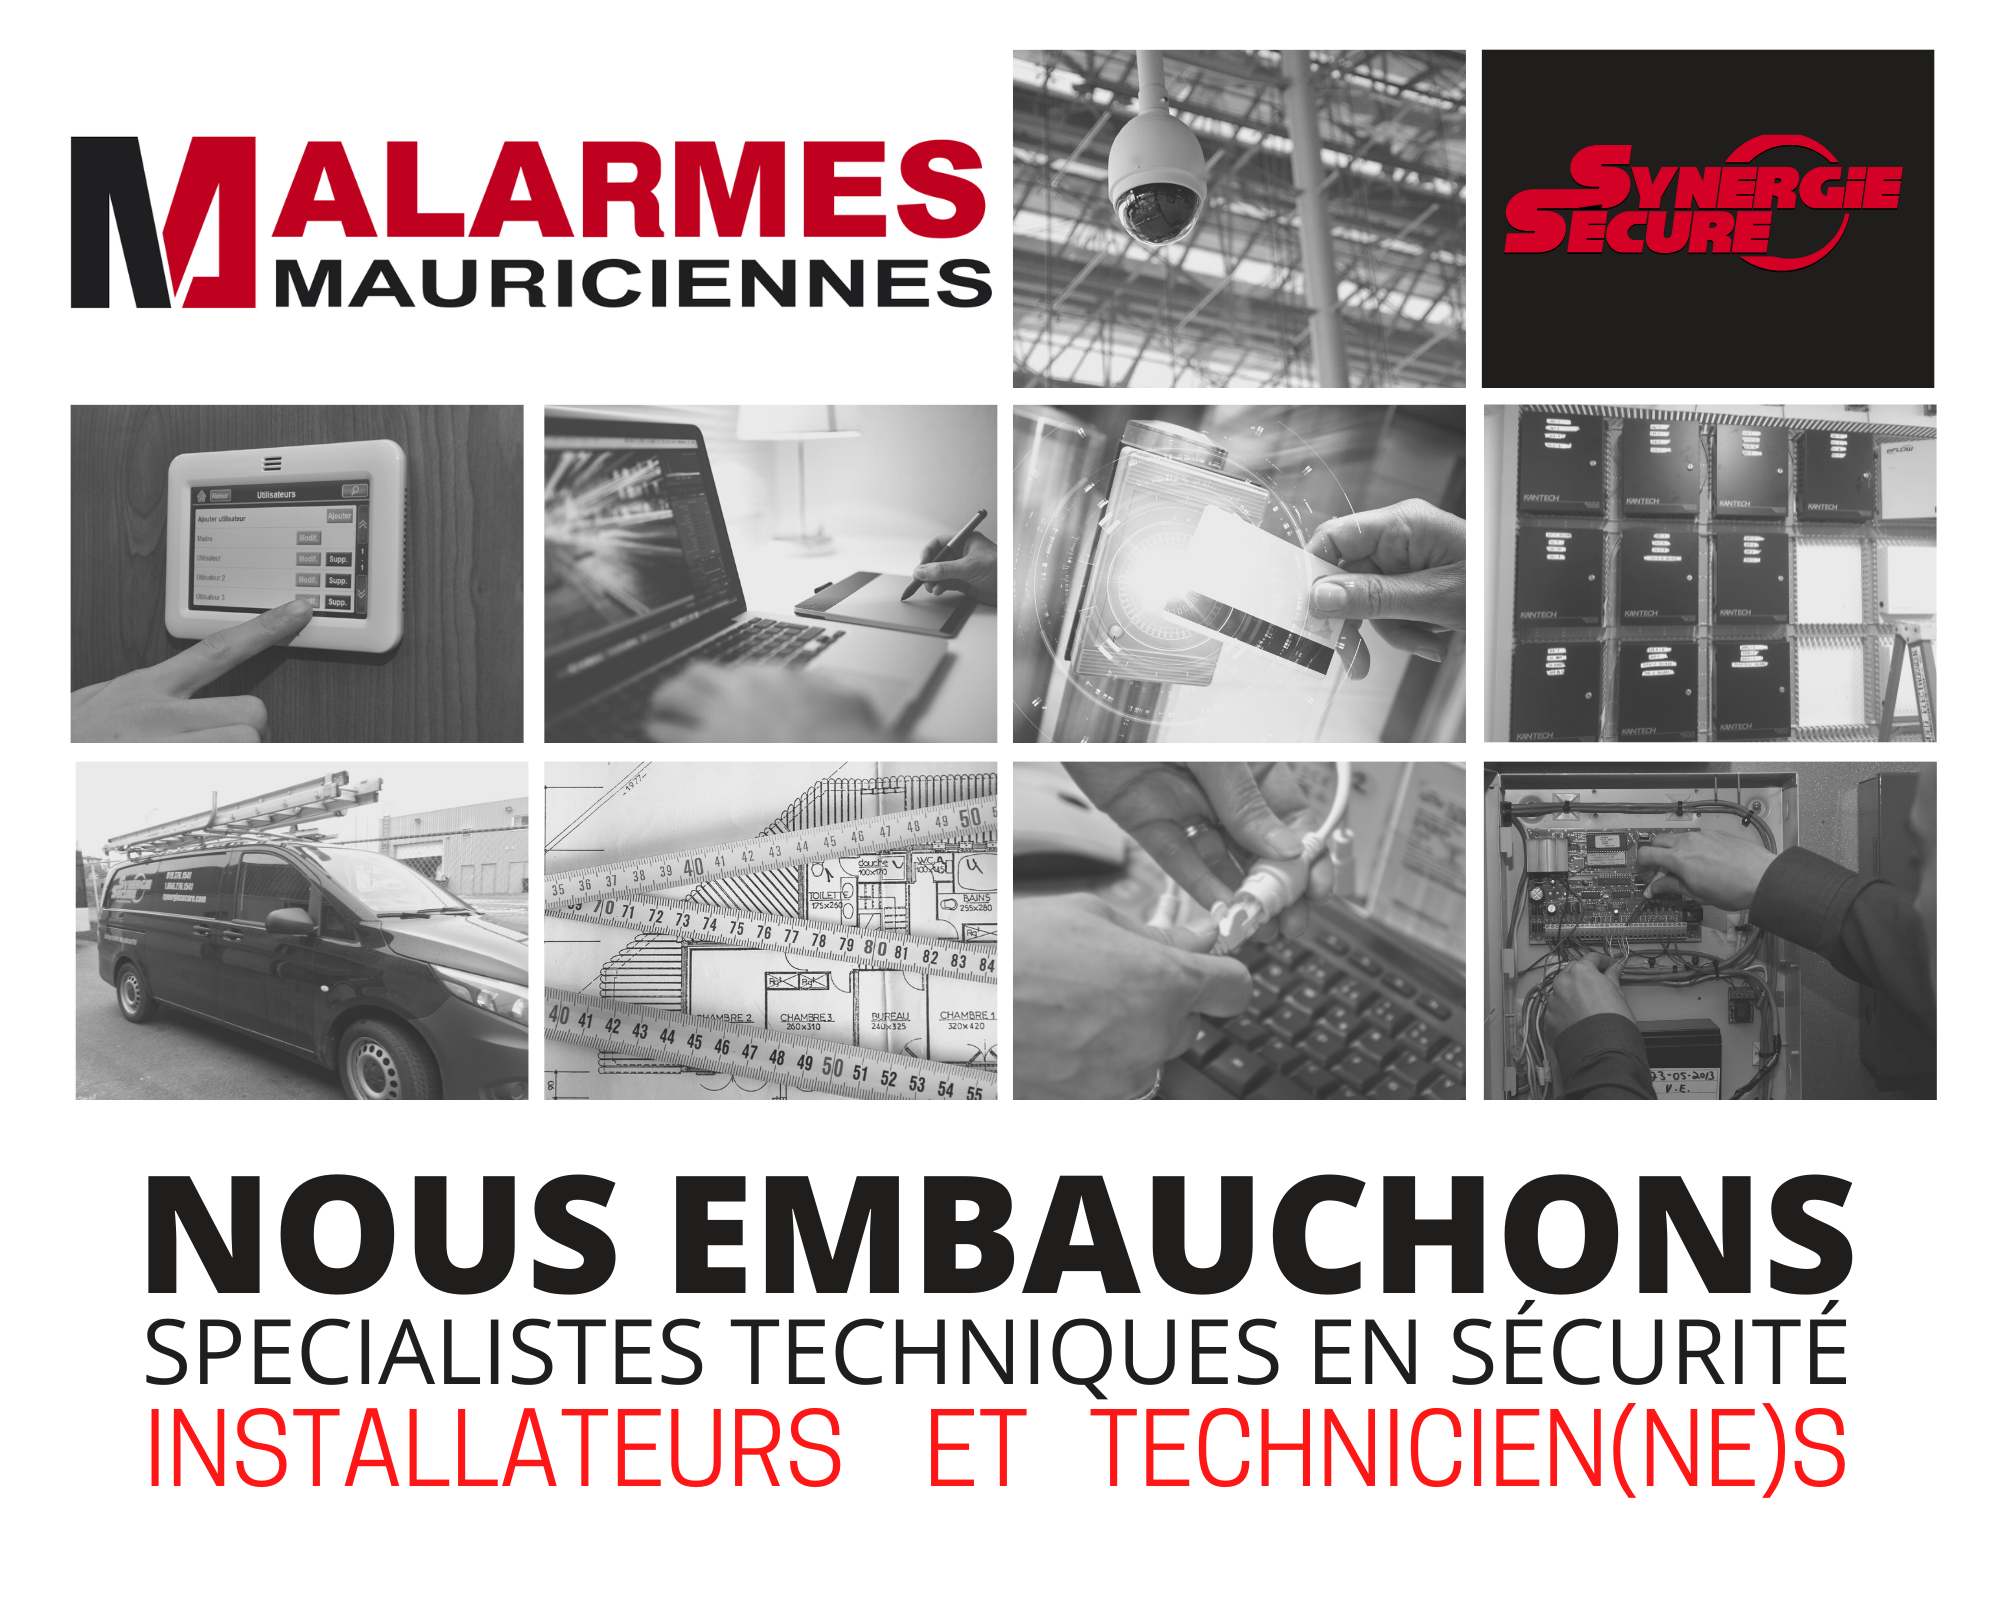 Alarmes Mauriciennes Inc et sa division Synergie Secure - NOUS EMBAUCHONS